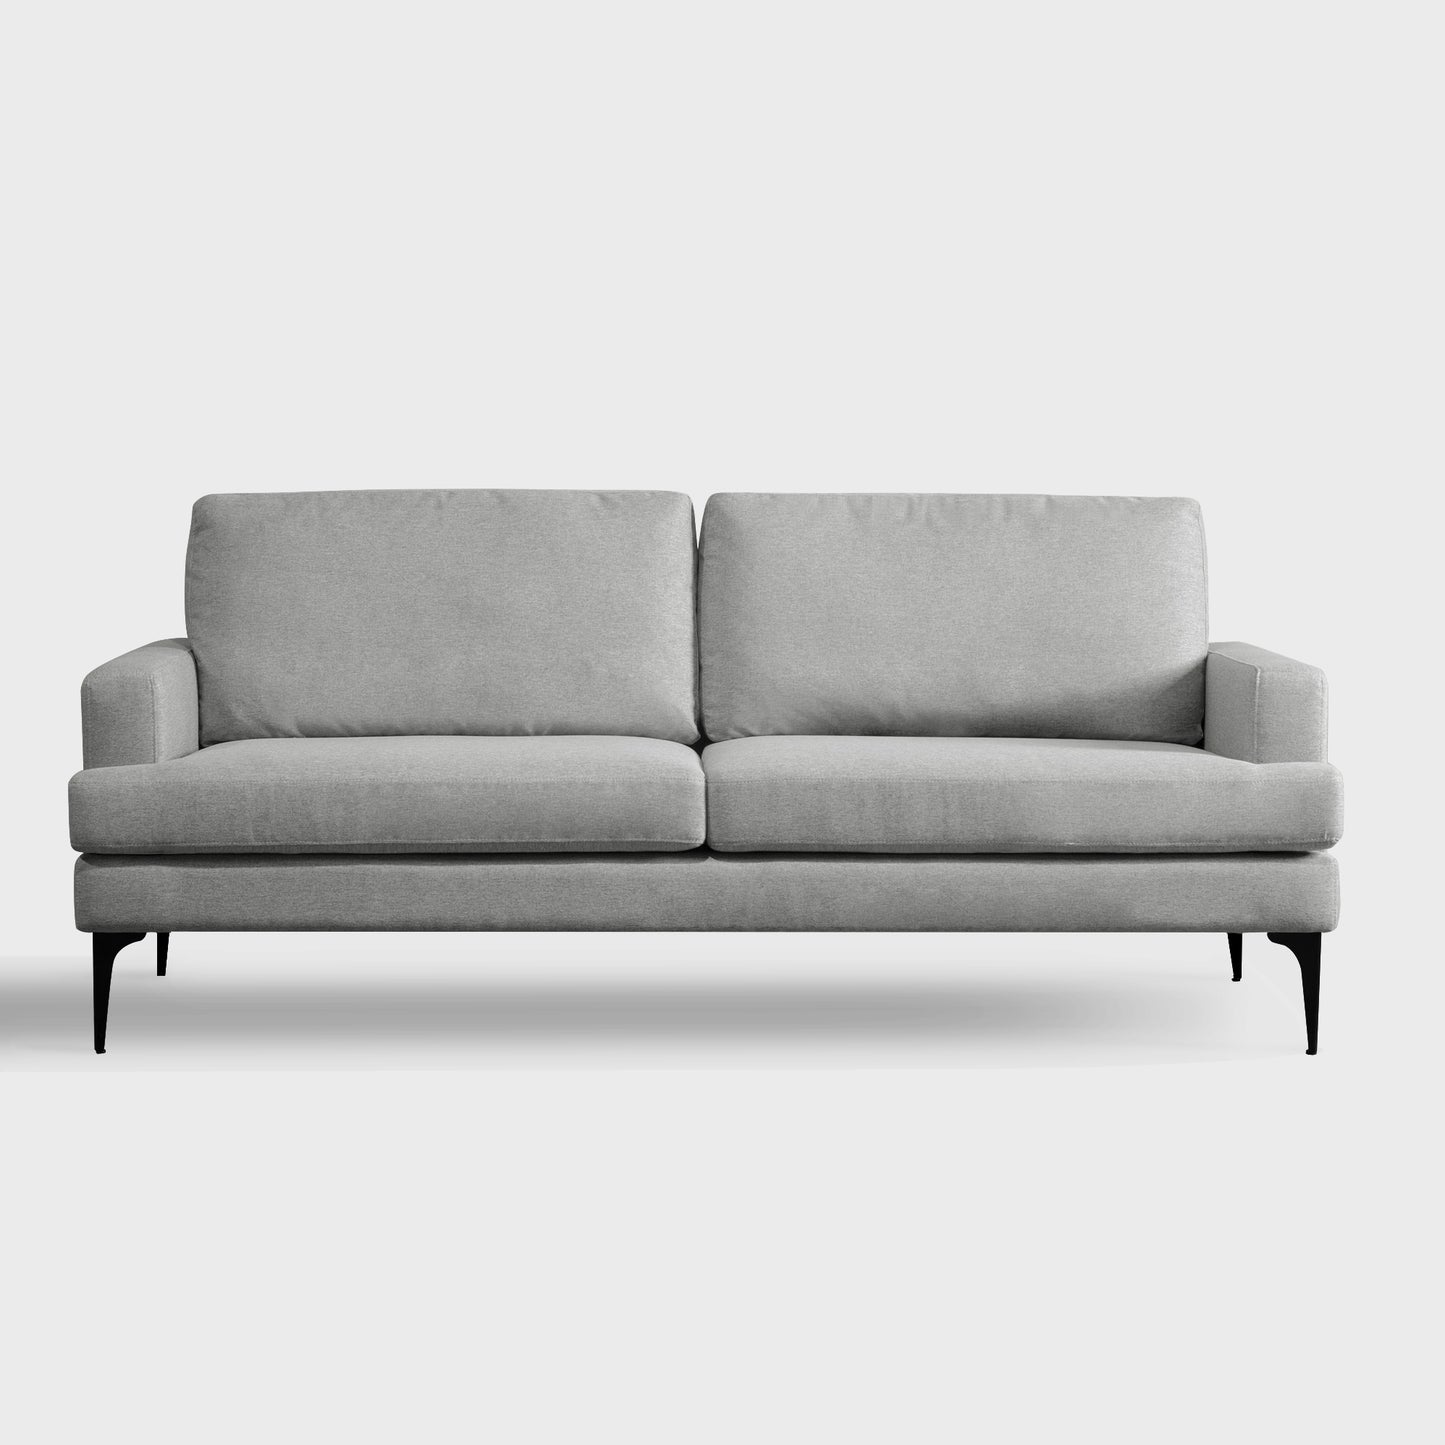 The Griffith Sofa